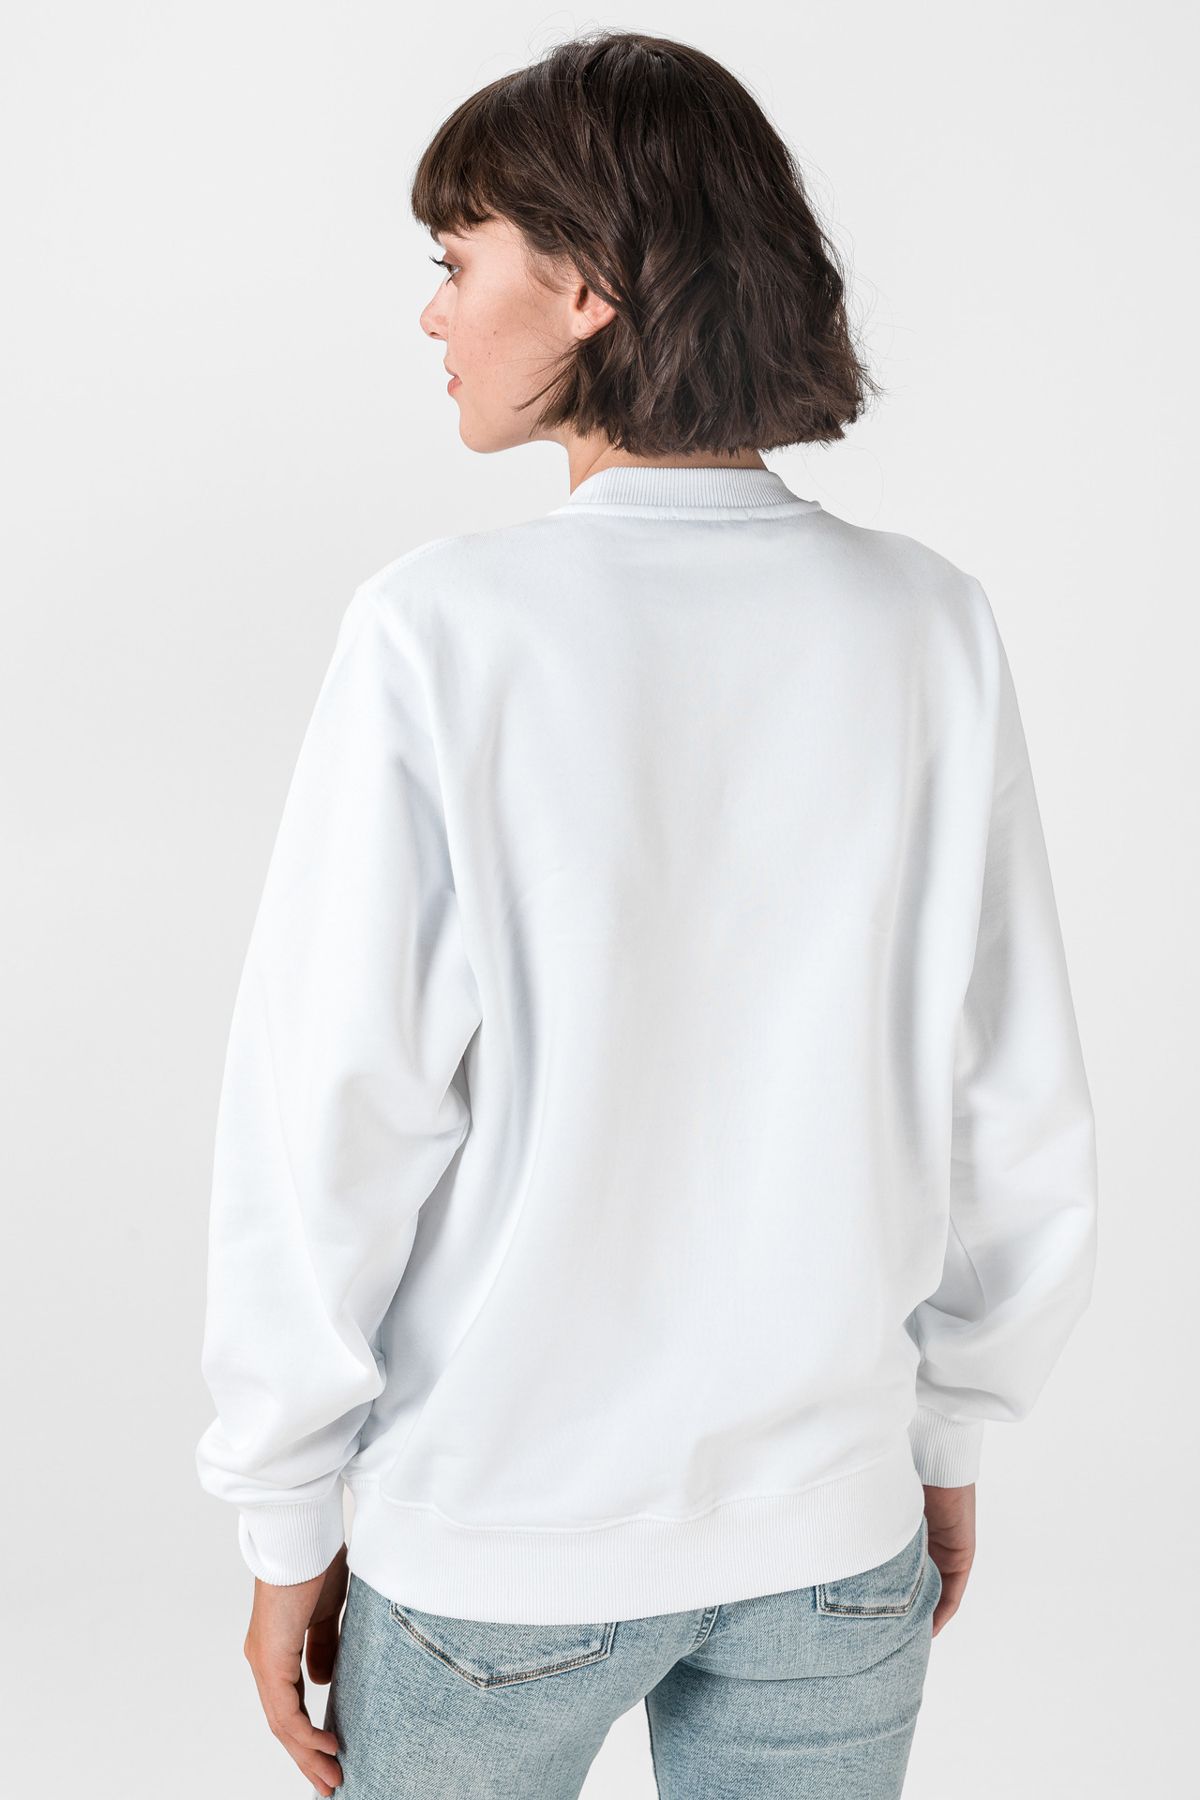 Diesel Sweatshirt - White - Regular fit